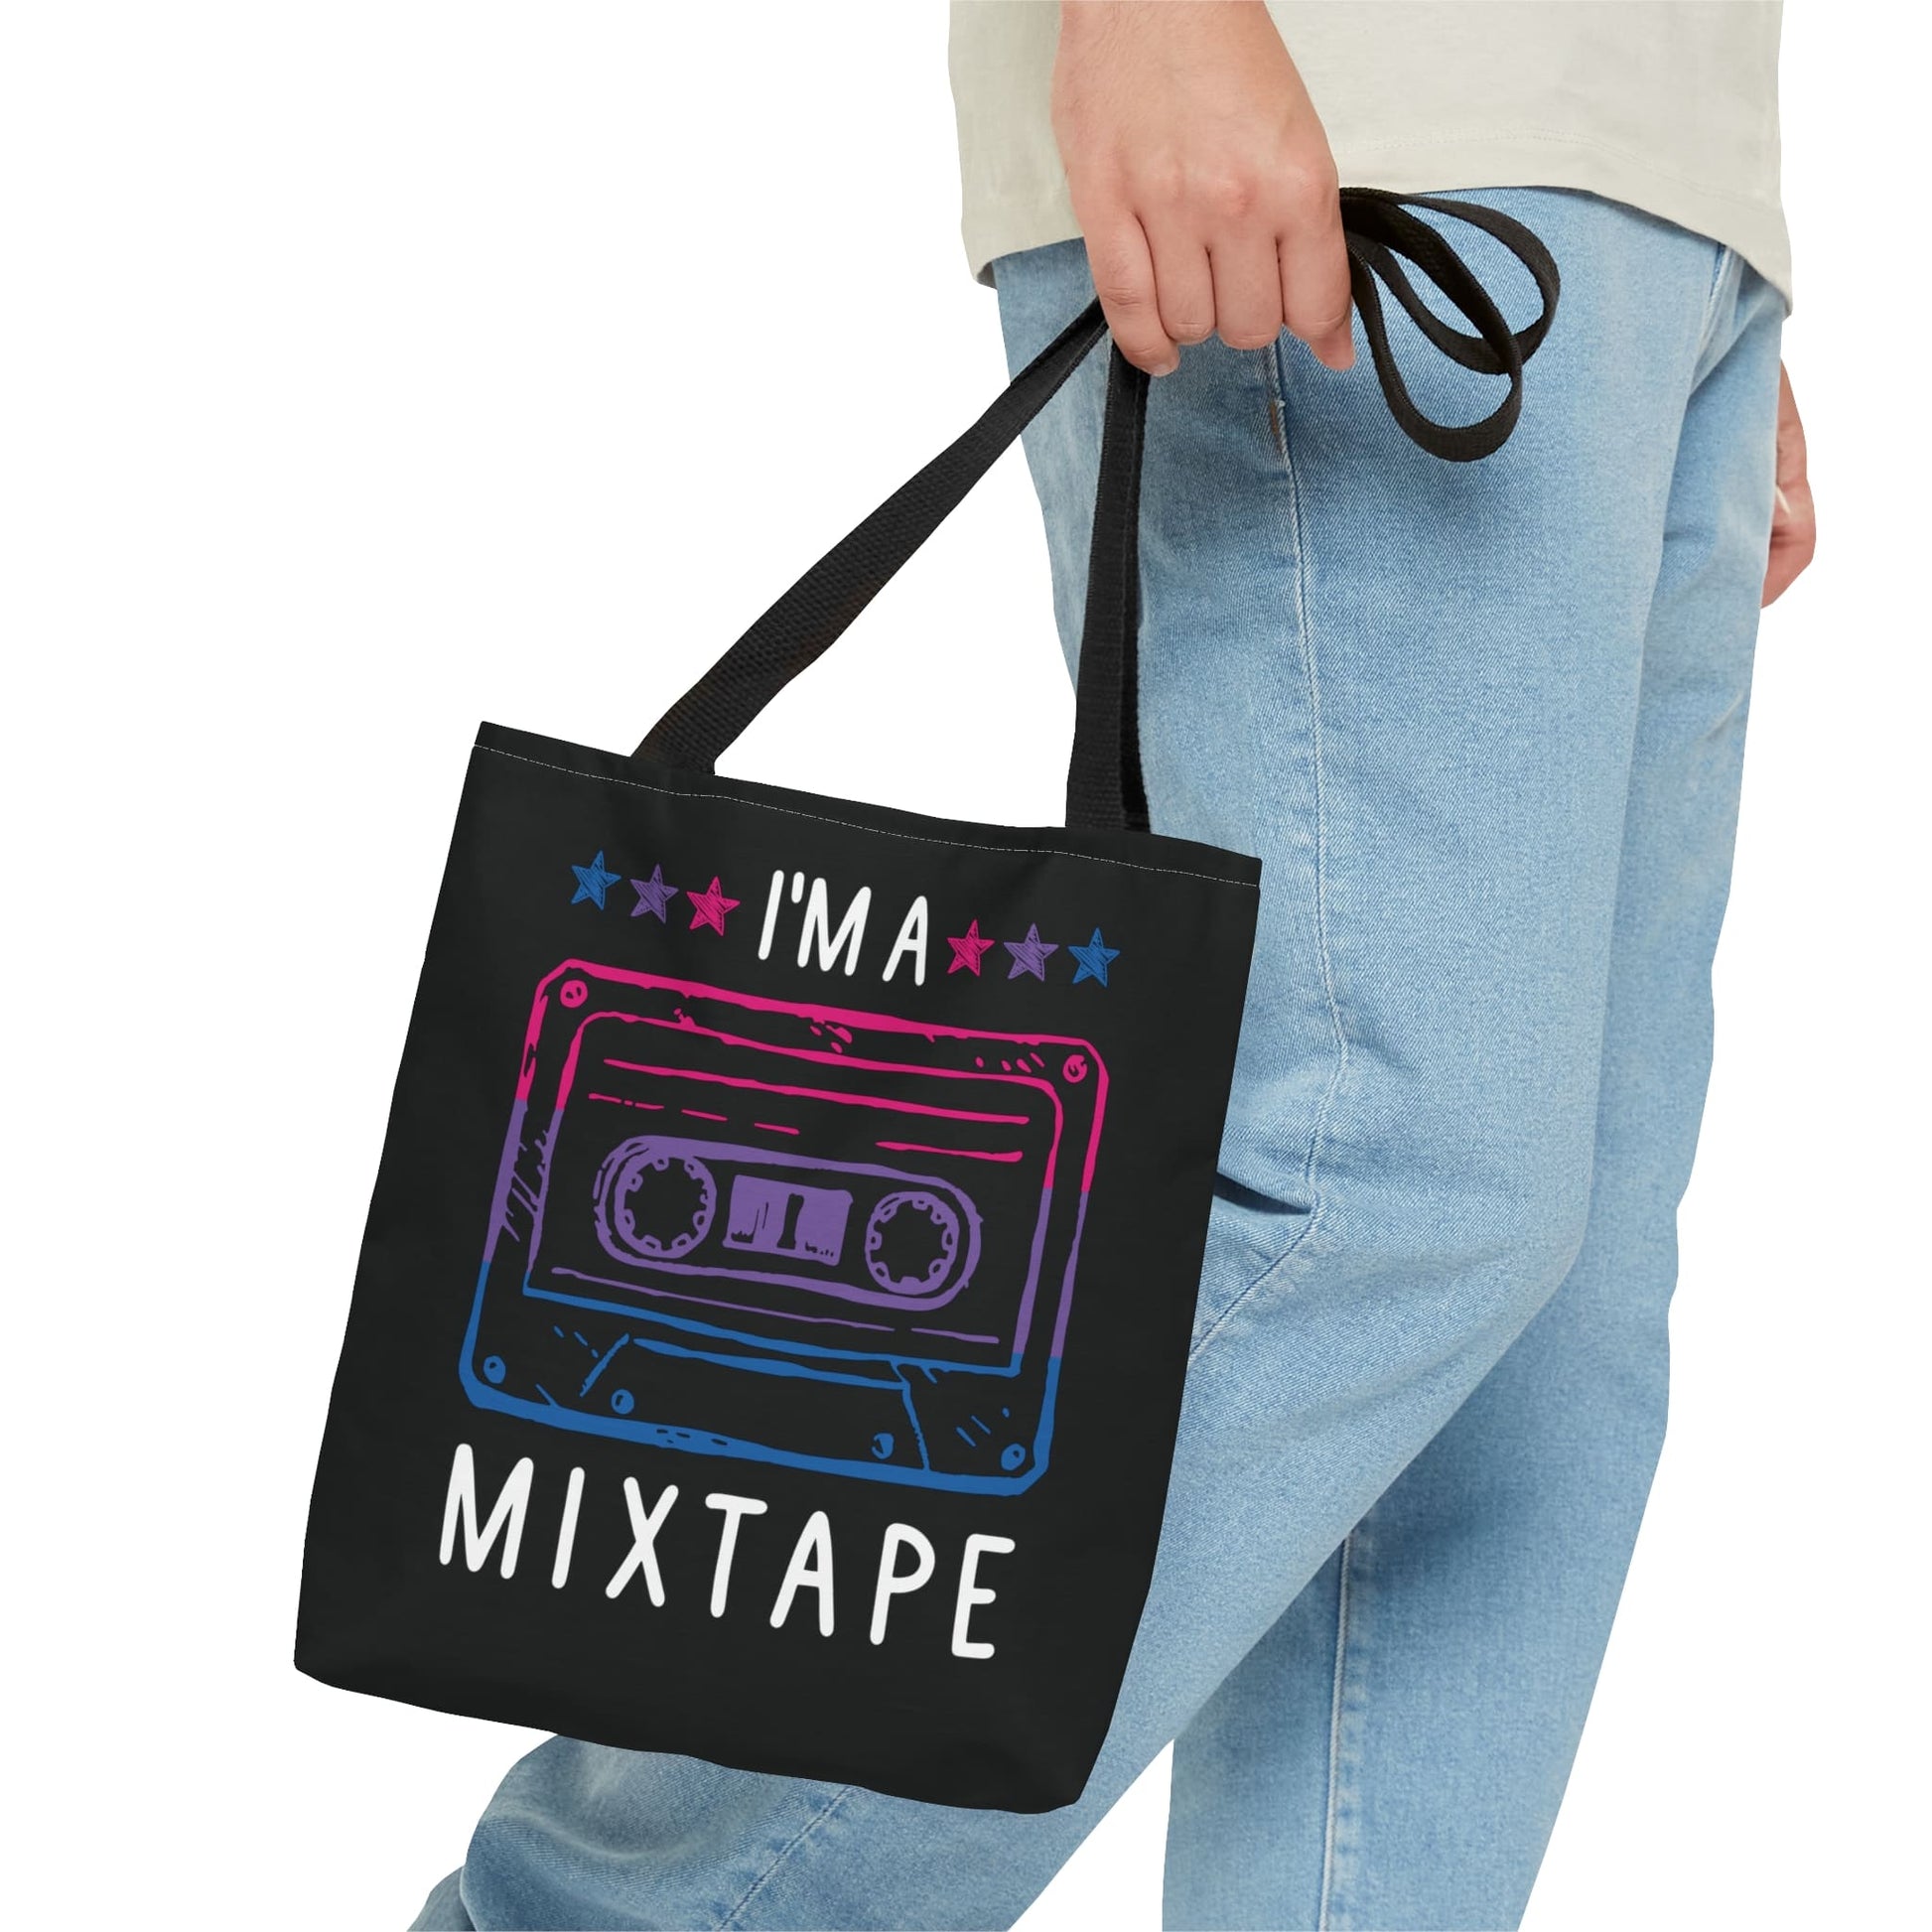 bisexual tote bag, mixtape bi pride bag, small